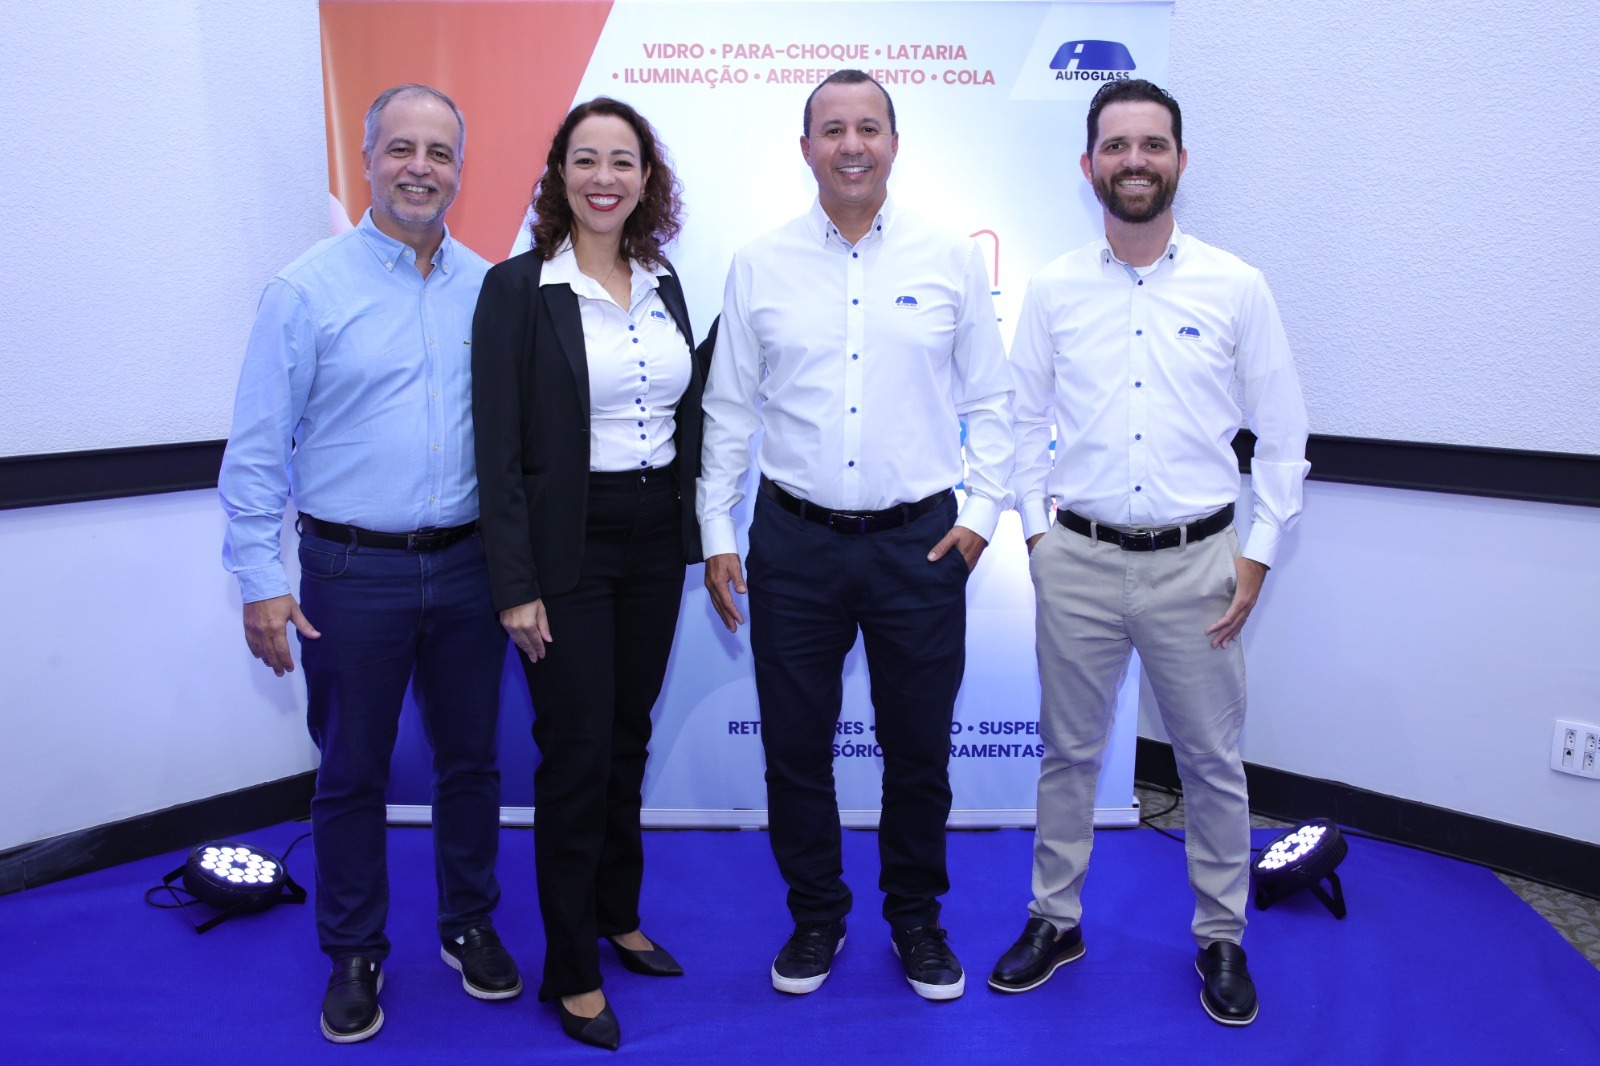 Autoglass promove capacitação e networking para o mercado de reparos automotivos em Curitiba